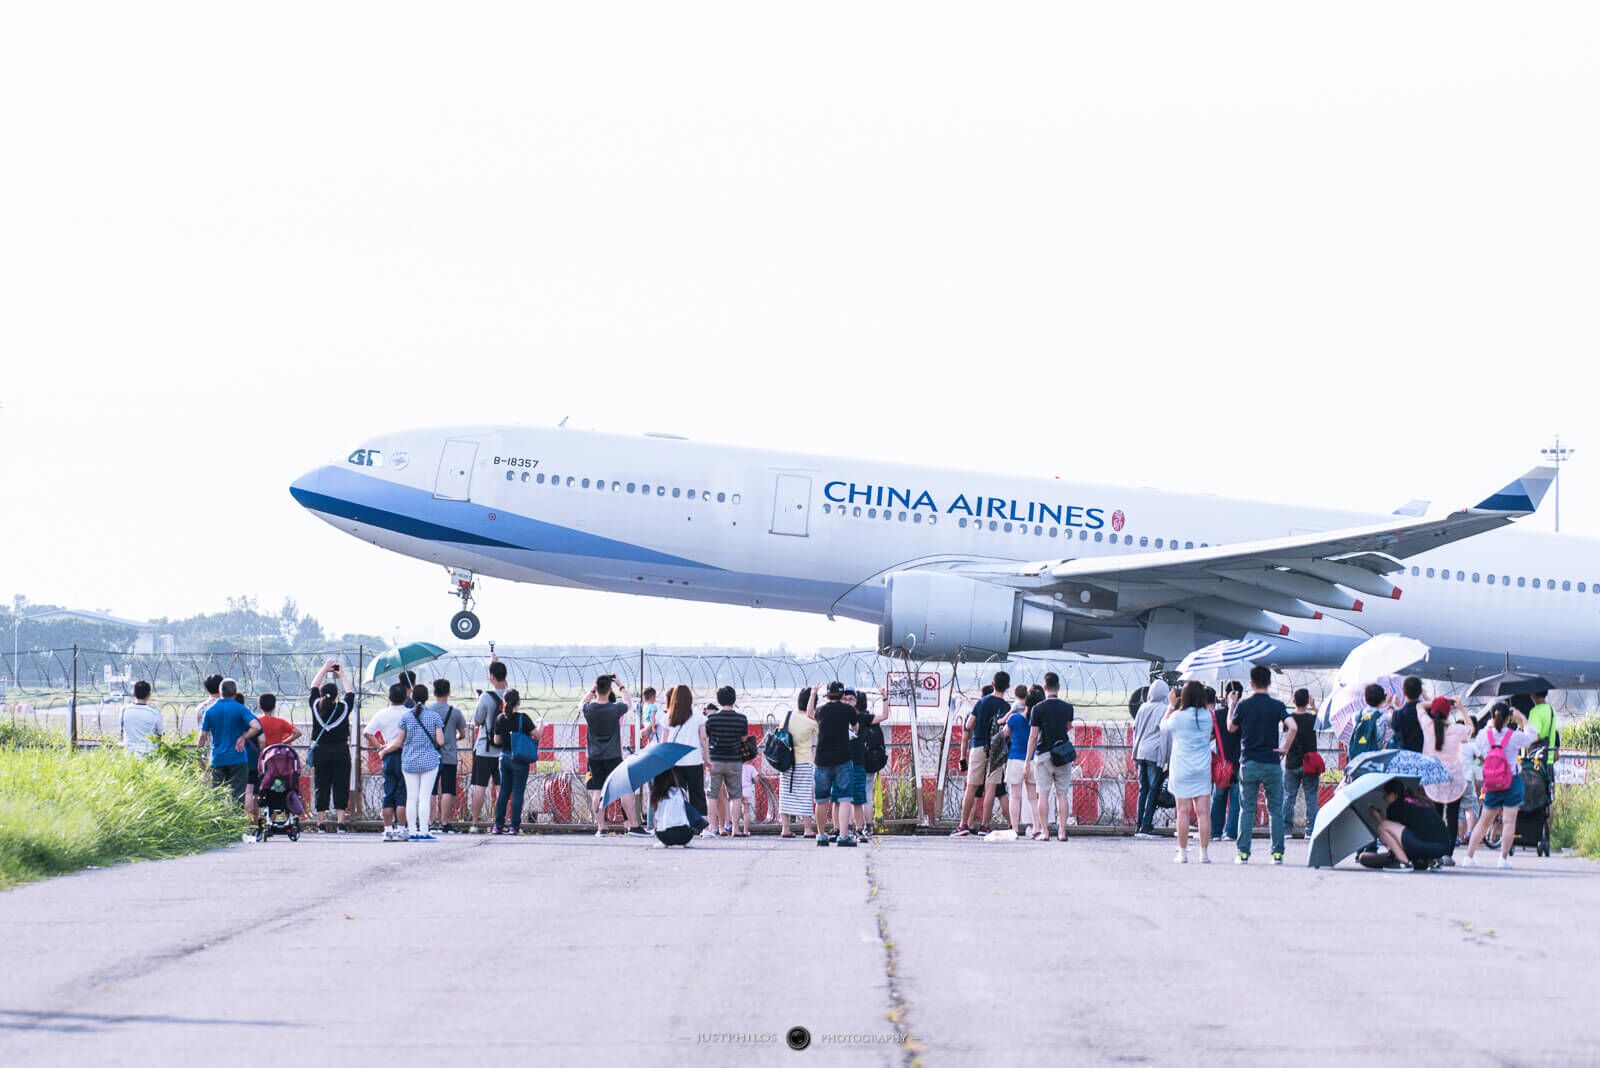 [Taoyuan] Plane Spotting at Taoyuan Airport | Watching Planes at Dayuan Interchange